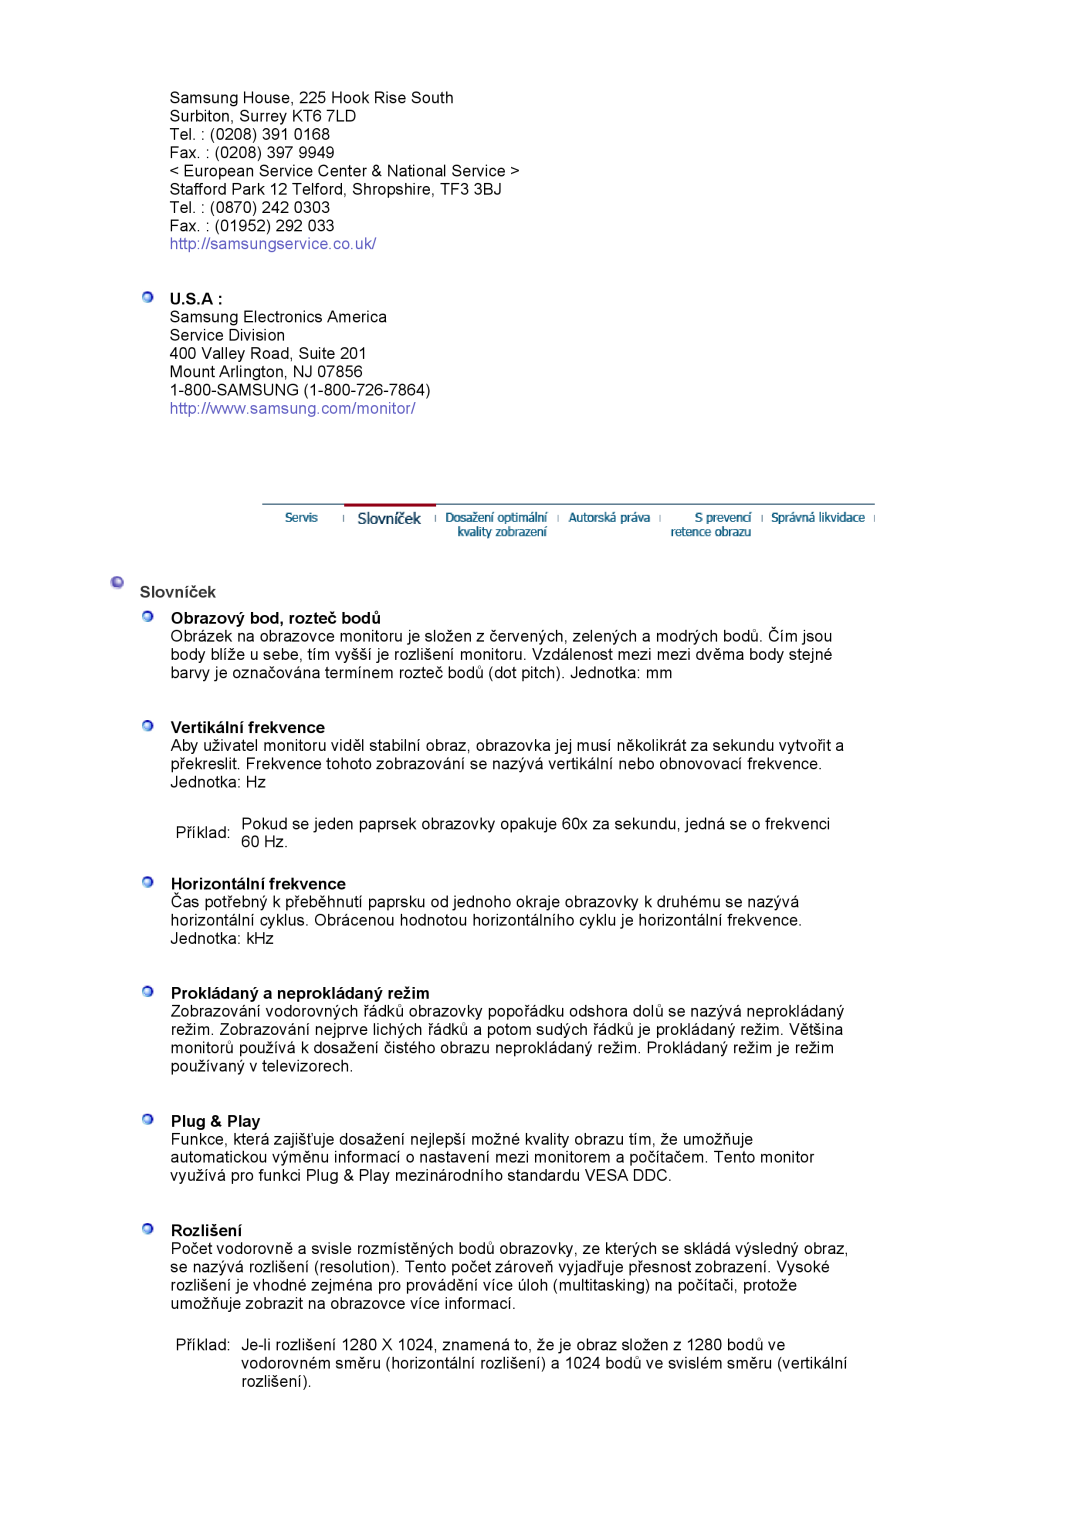 Samsung LS17MJSTSE/EDC manual U.S.A, Slovníček, Obrazový bod, rozteč bodů, Vertikální frekvence, Horizontální frekvence 